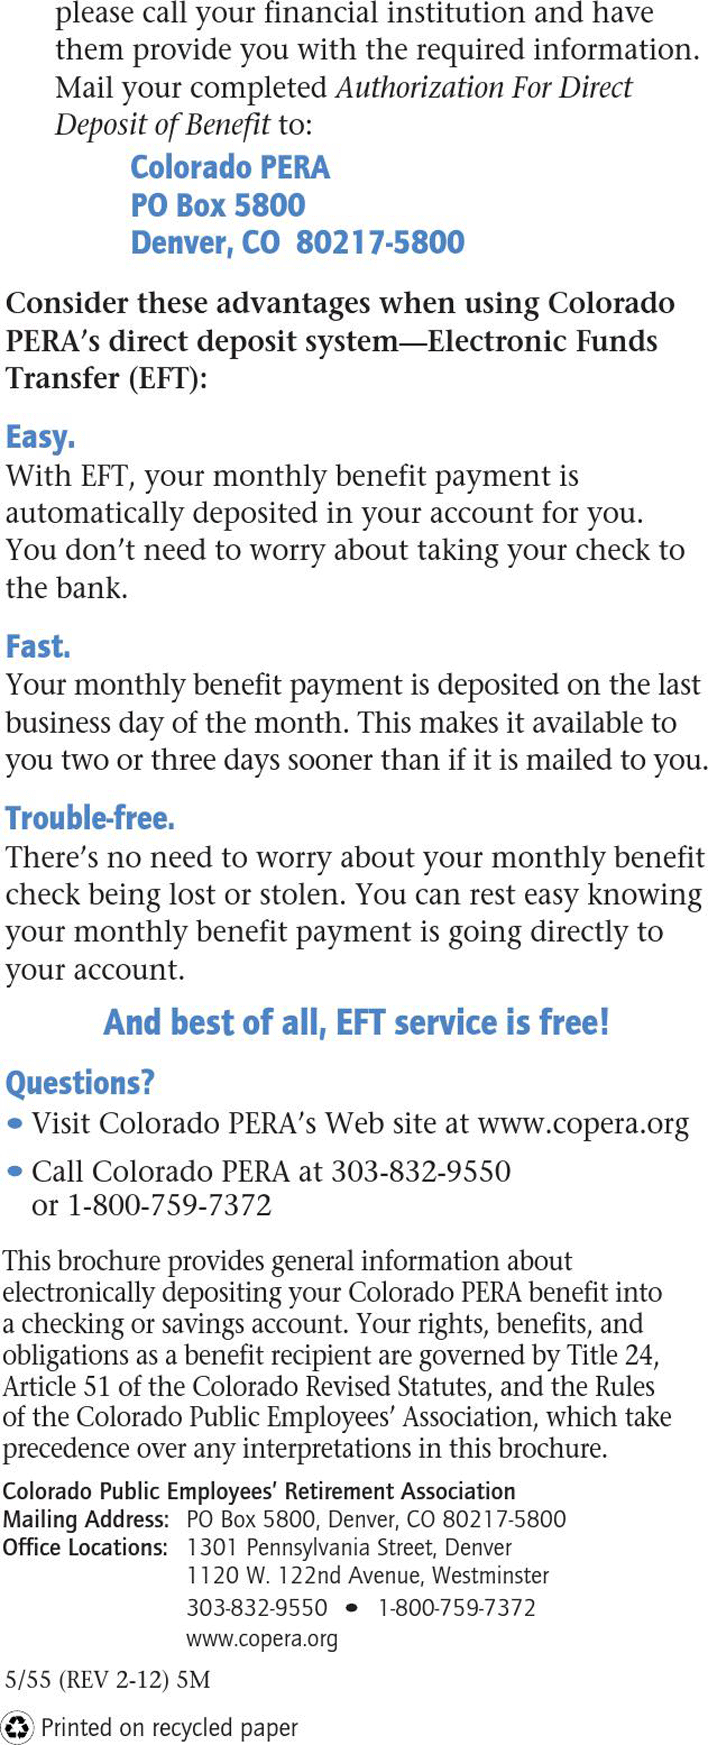 Colorado Direct Deposit Form 2 Page 3